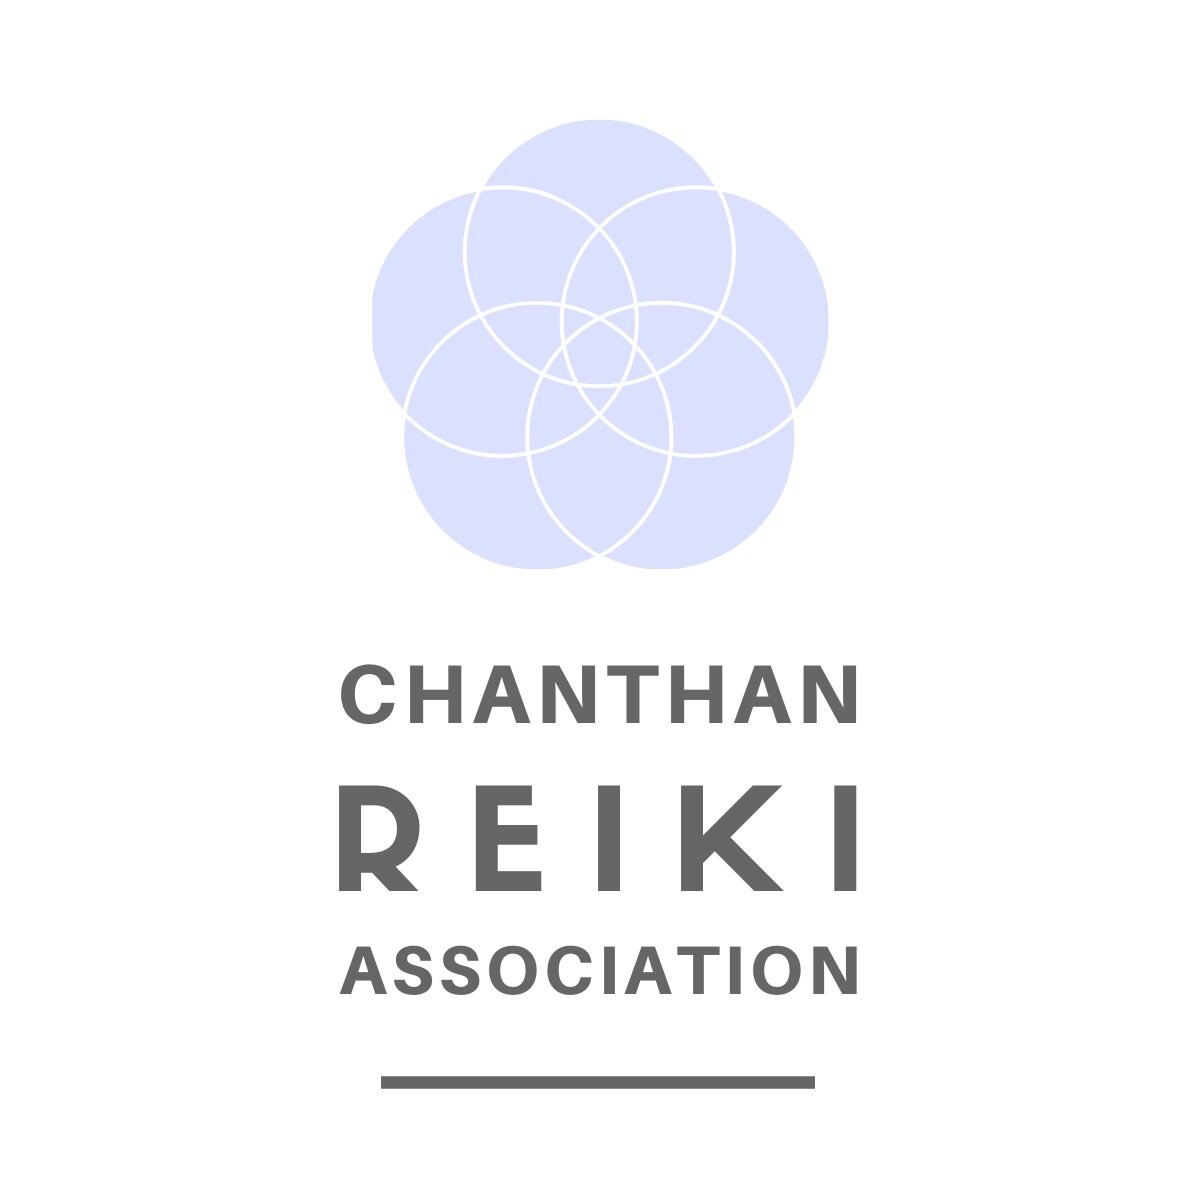 Chanthan Reiki Association (Copy)